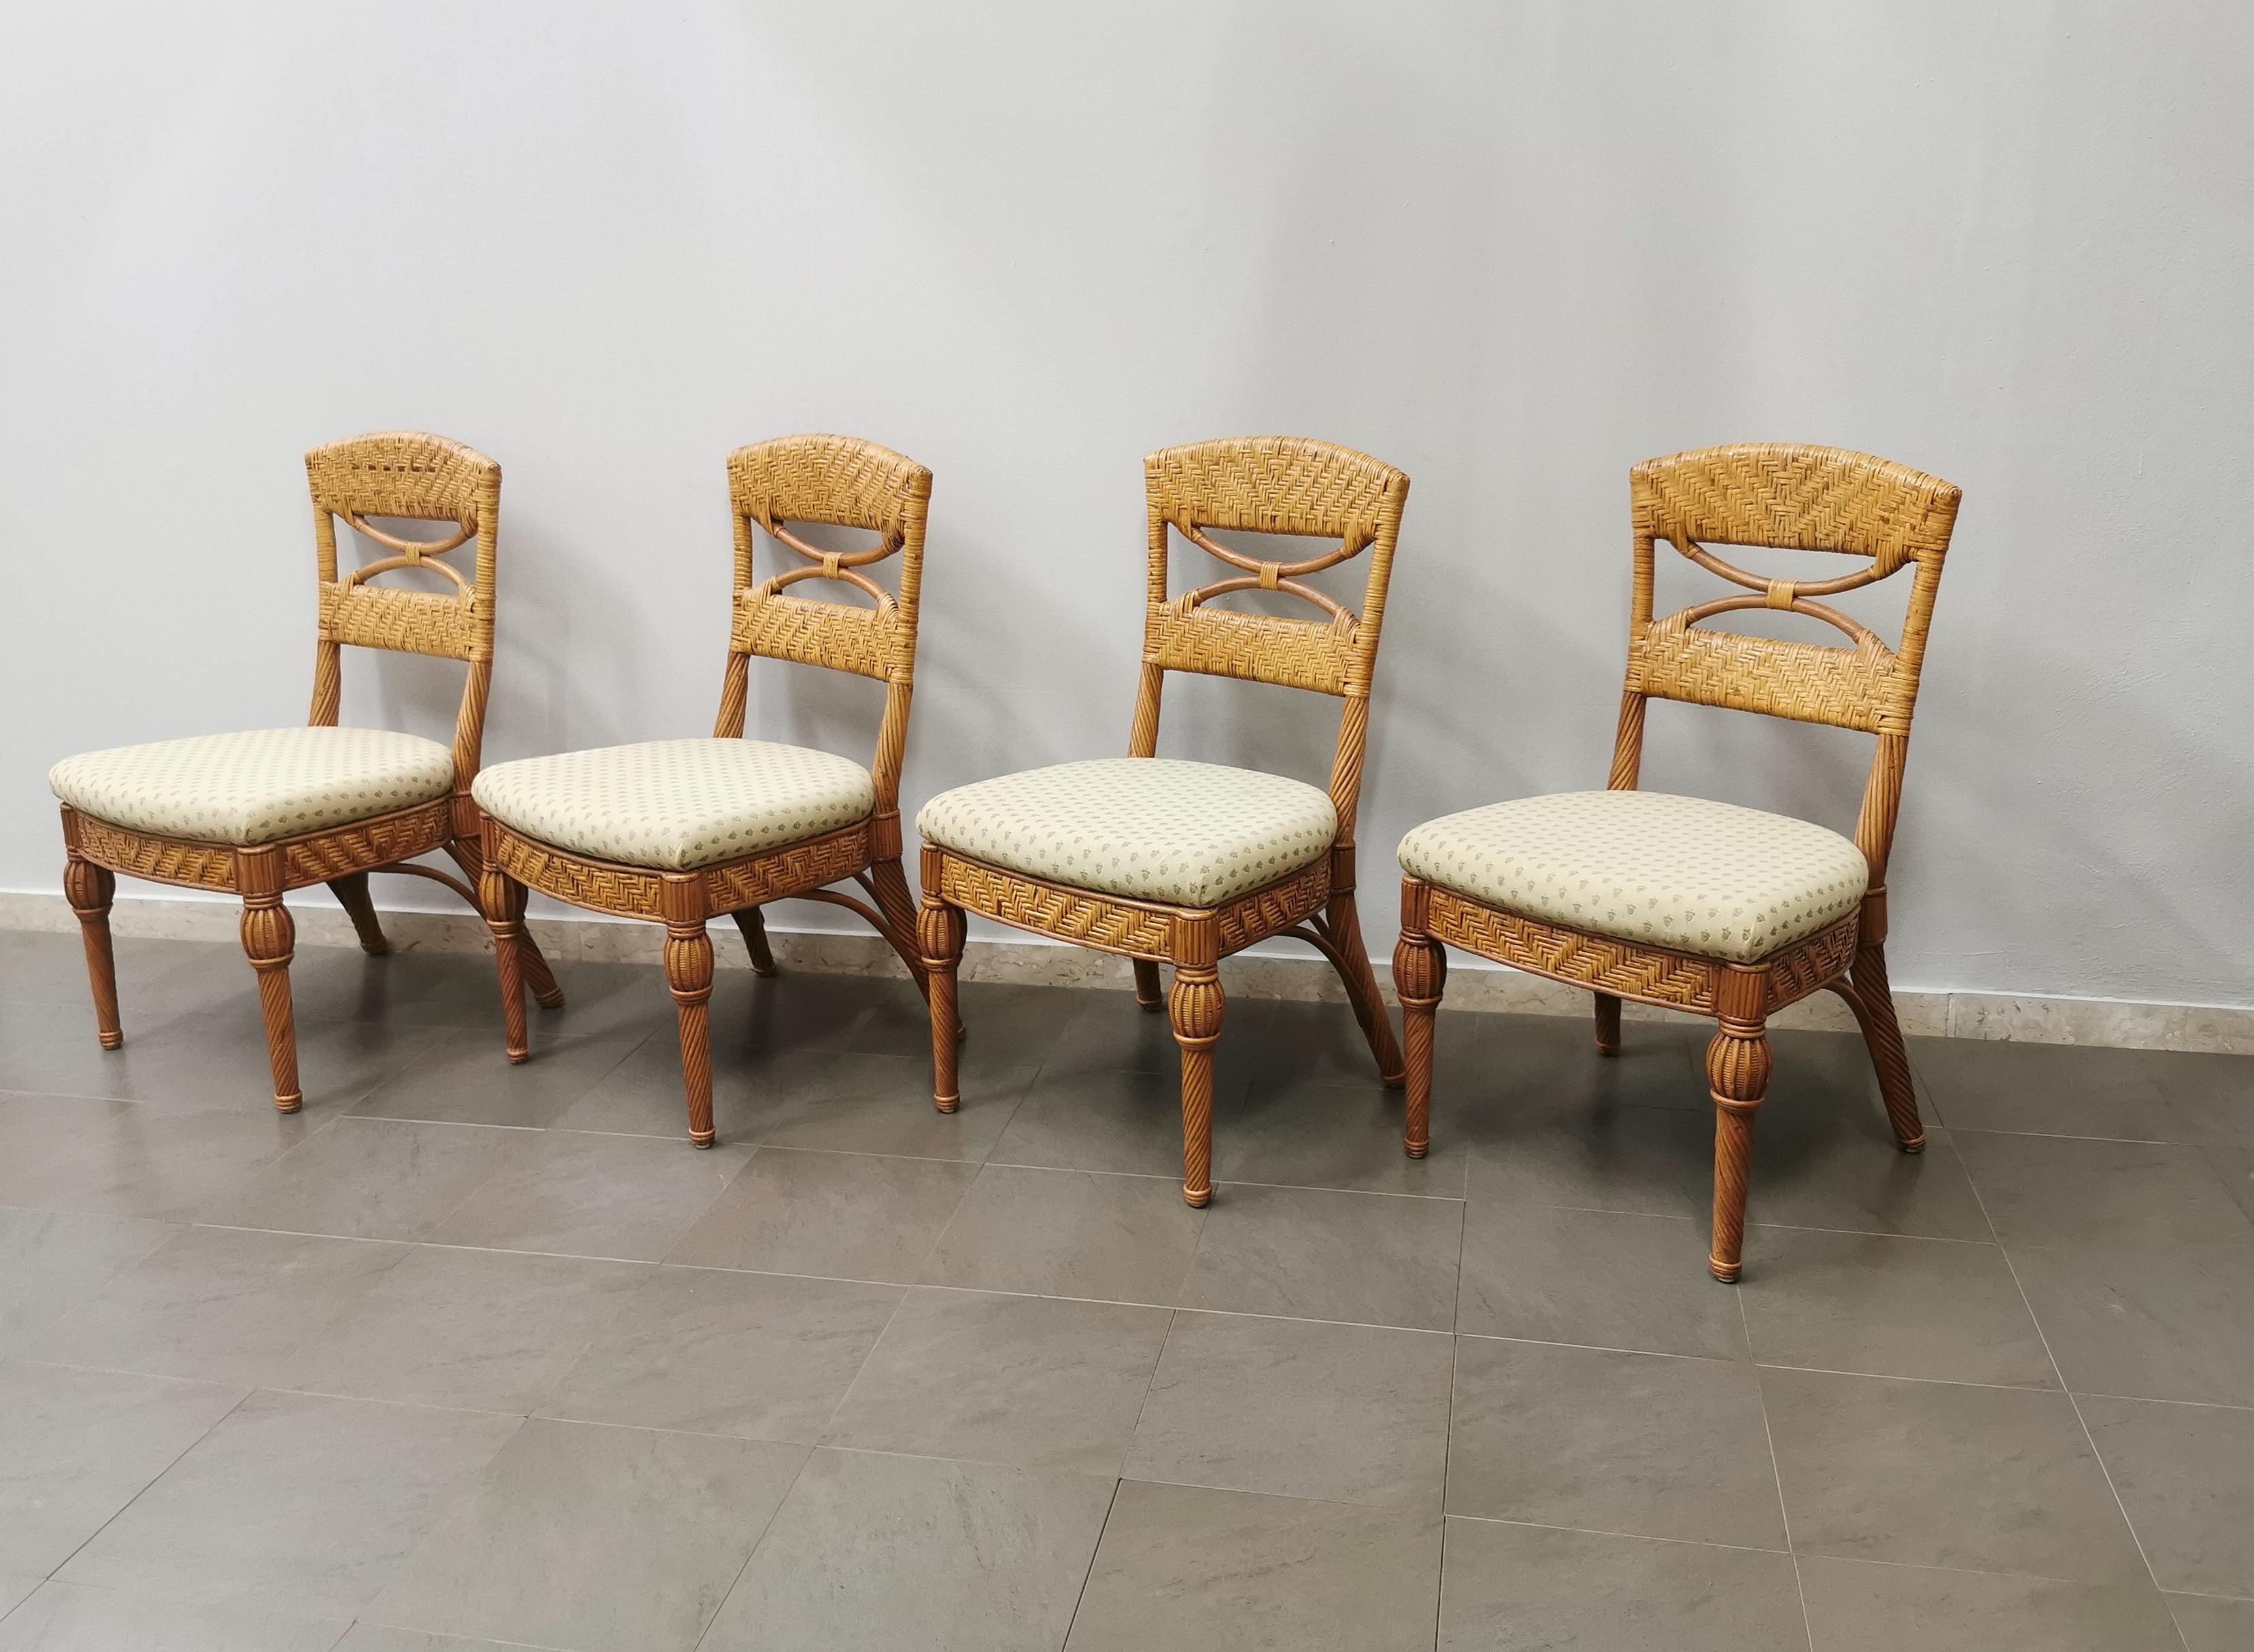 Ensemble de 4 chaises de salle à manger ou de jardin produites en Italie dans les années 1980 par la société Vivai del Sud. Chaque chaise simple est fabriquée en osier avec une assise rembourrée et revêtue d'un tissu à motifs clairs.


Note : Nous